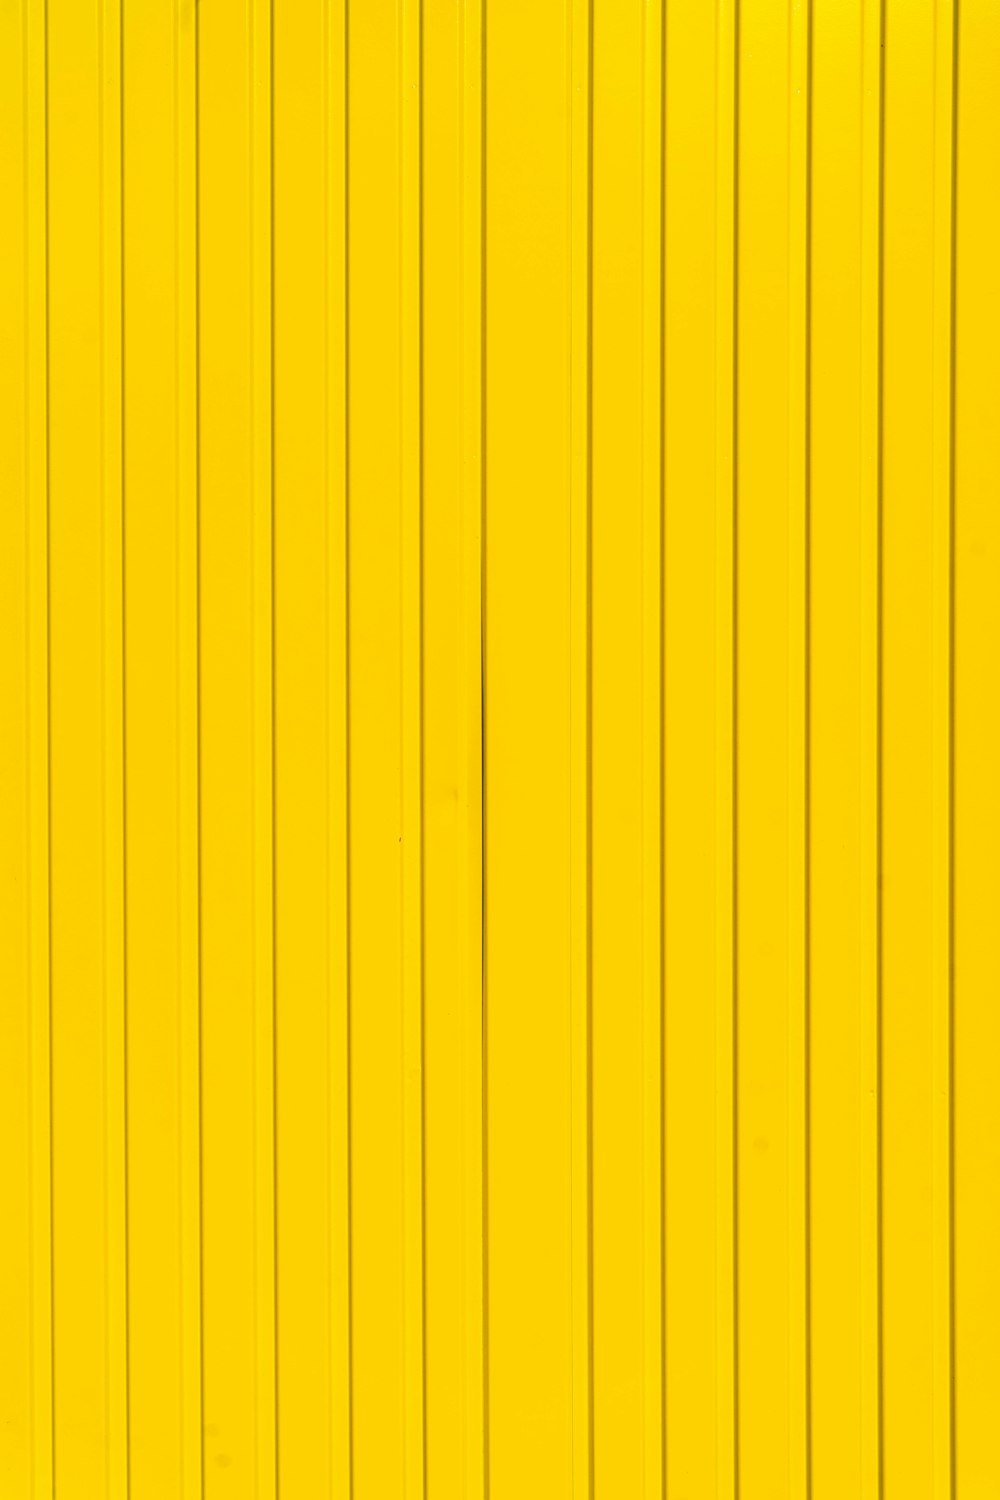 gelb-schwarz gestreifter Hintergrund